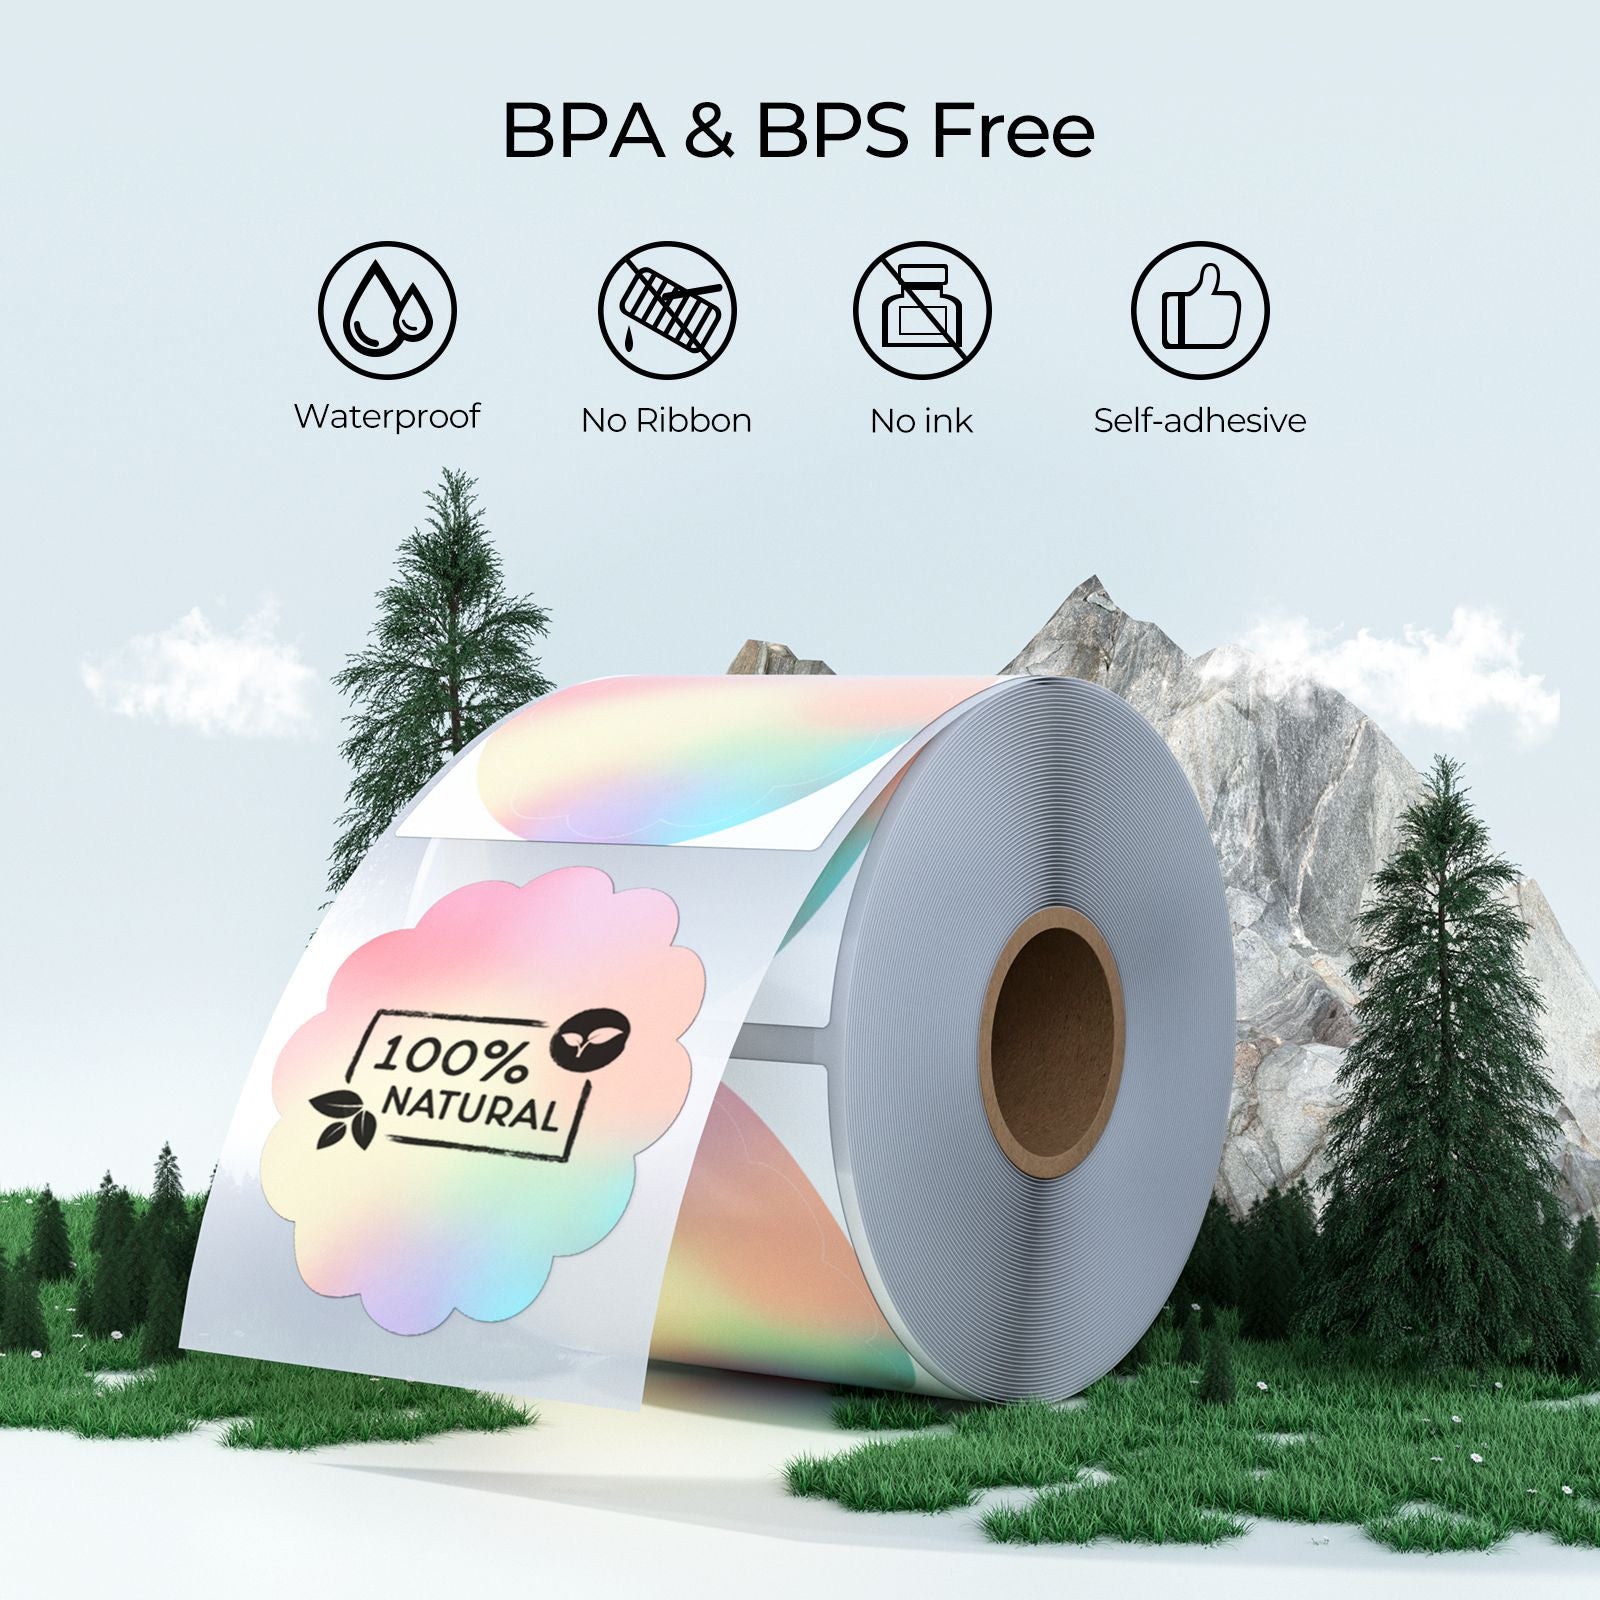 Diese etiketten enthalten kein BPA und BPS, benötigen keine Tinte und sind sowohl umweltfreundlich als auch unbedenklich.